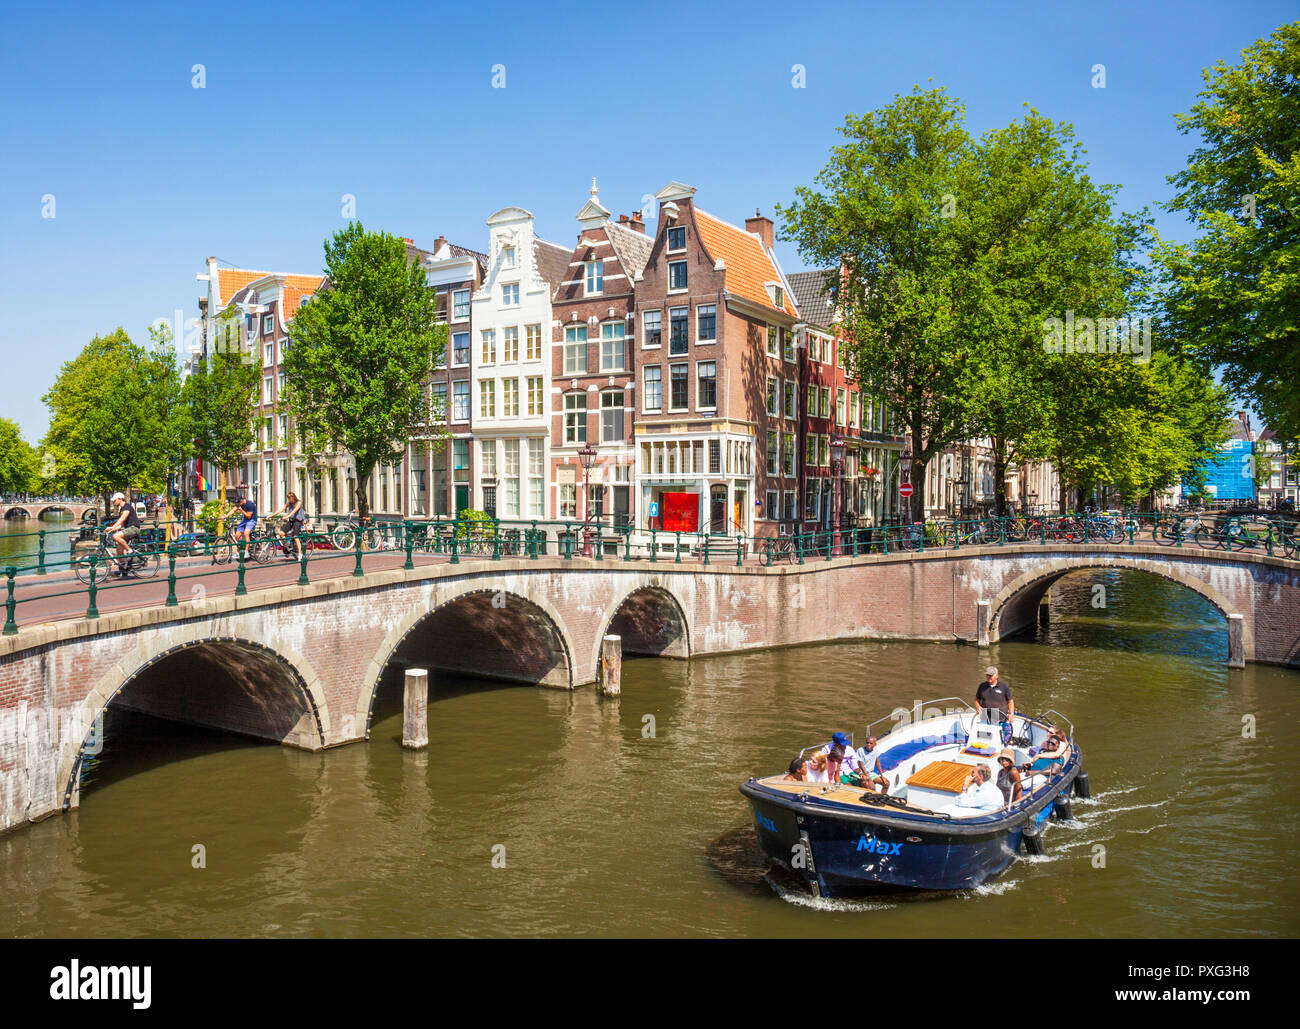 L'Amsterdam canal bateau sous les ponts du canal Leidsegracht au croisement avec canal Keizergracht Amsterdam Pays-Bas Hollande eu Europe Banque D'Images